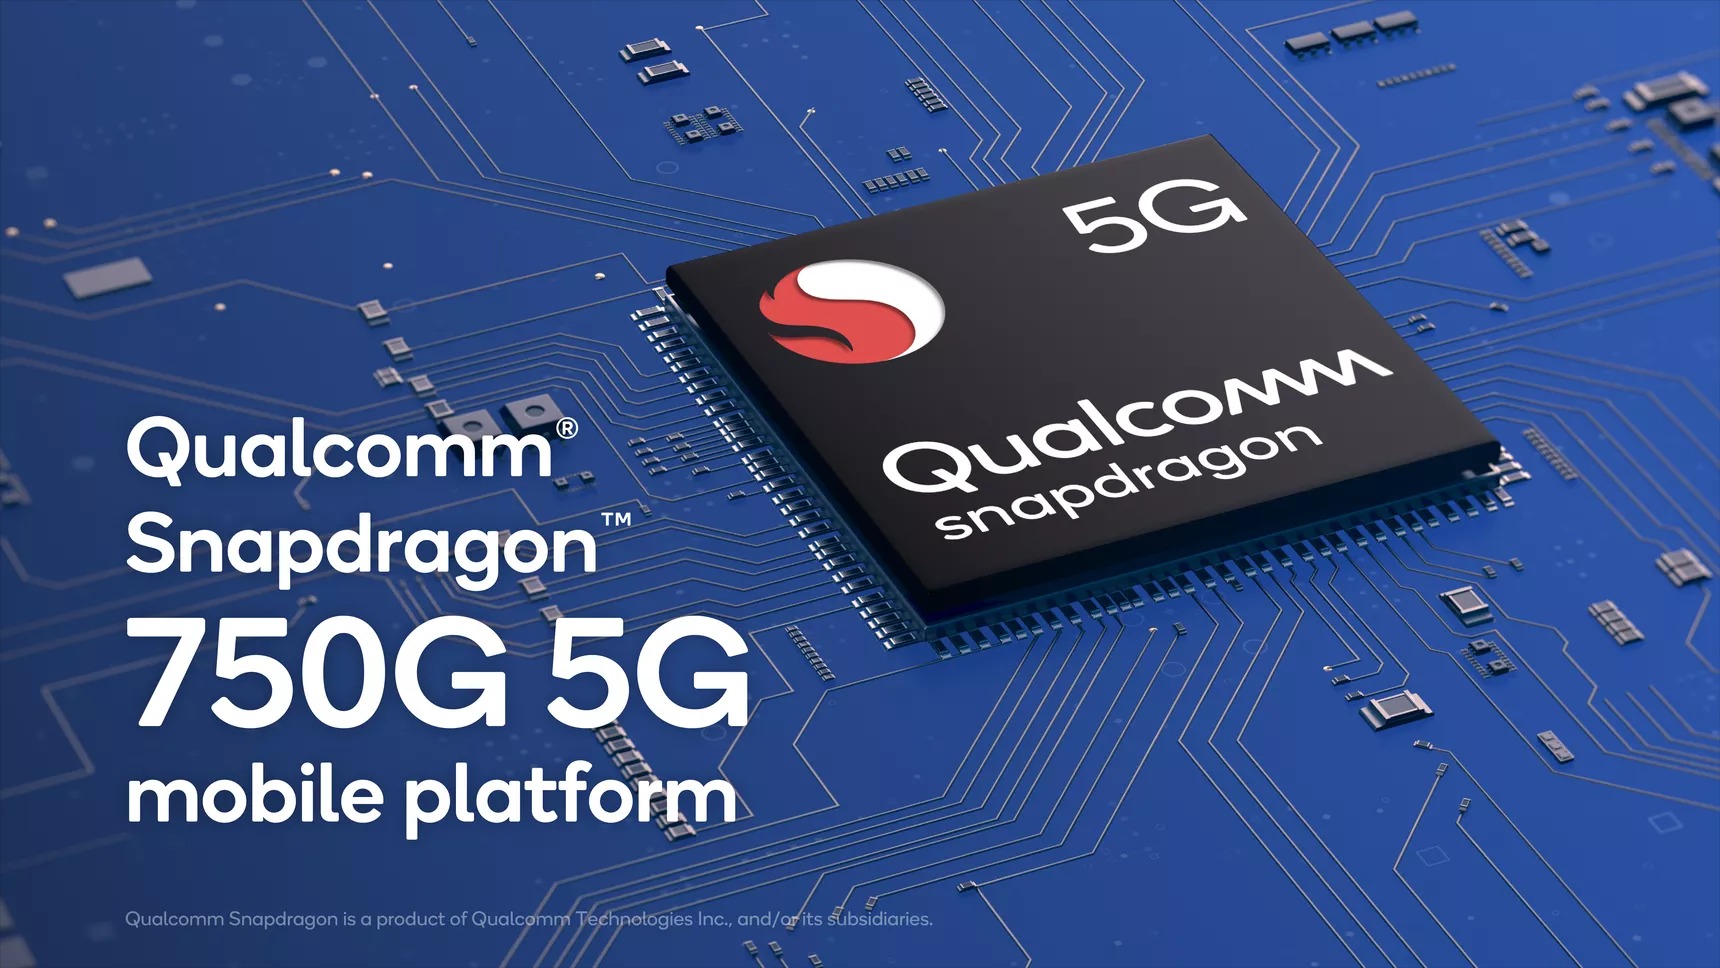 Qualcomm Snapdragon 750G 5G Mobi